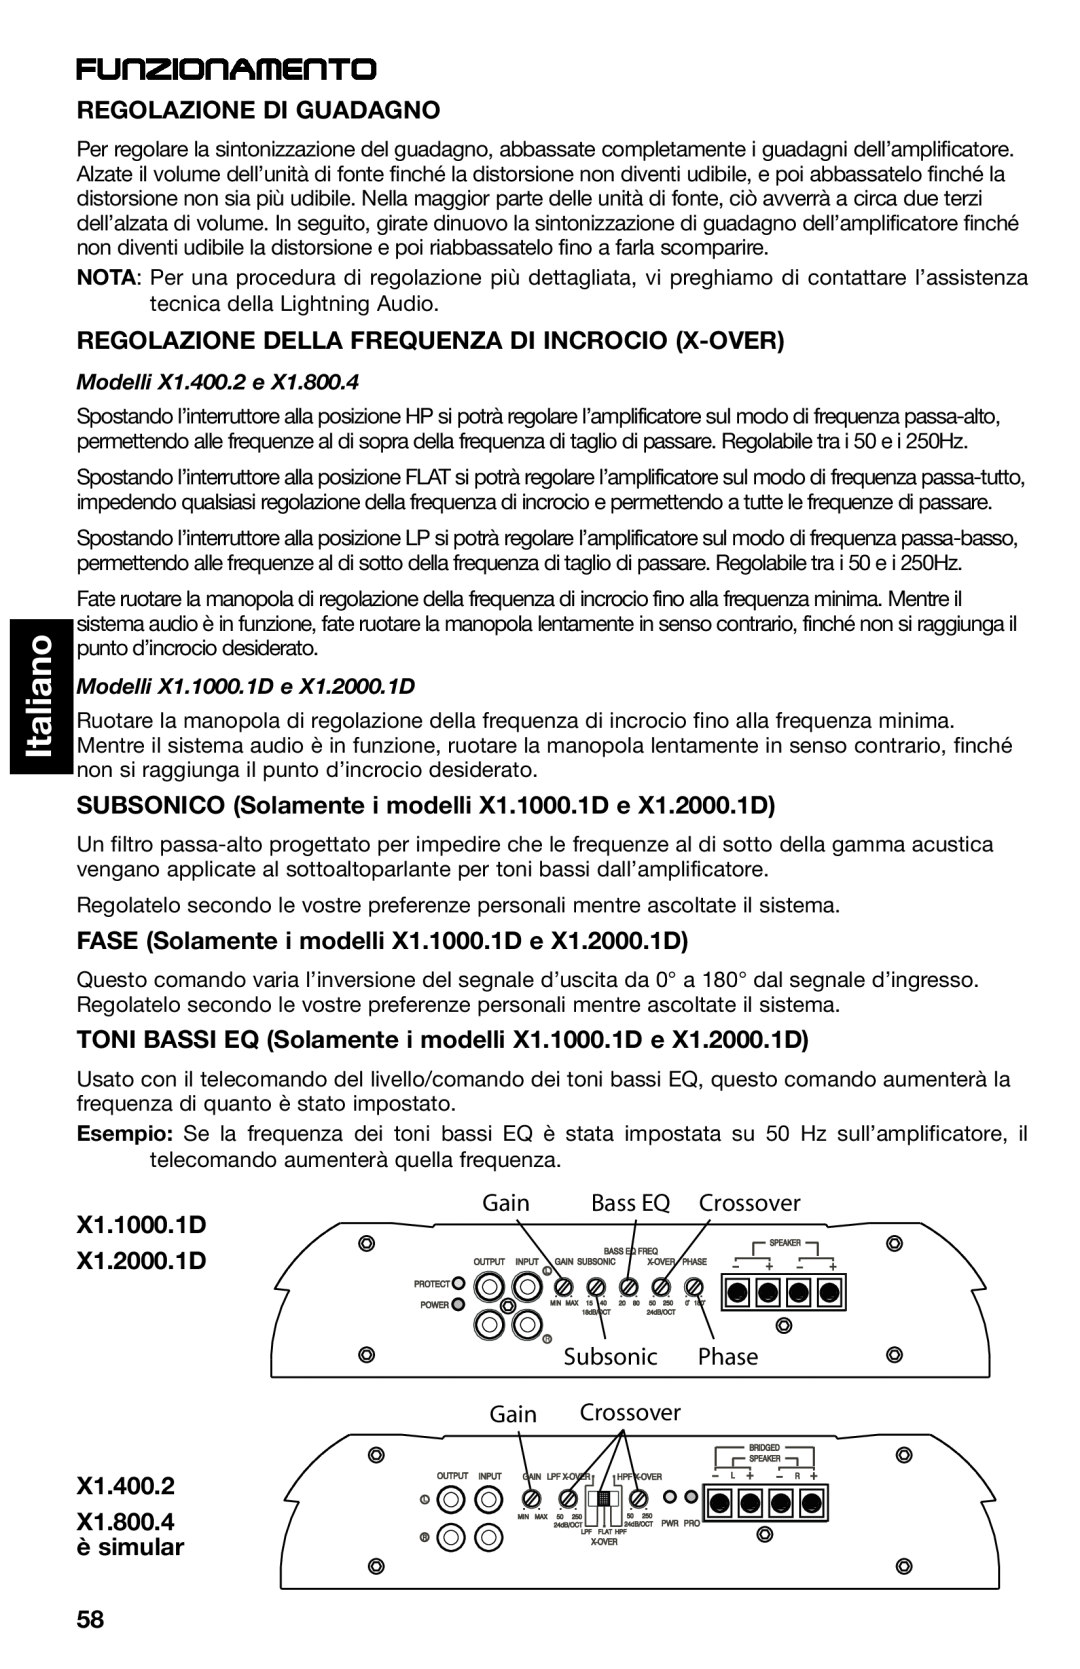 Lightning Audio Funzionamento, Italiano, Regolazione Di Guadagno, X1.1000.1D X1.2000.1D, X1.400.2 X1.800.4 è simular 